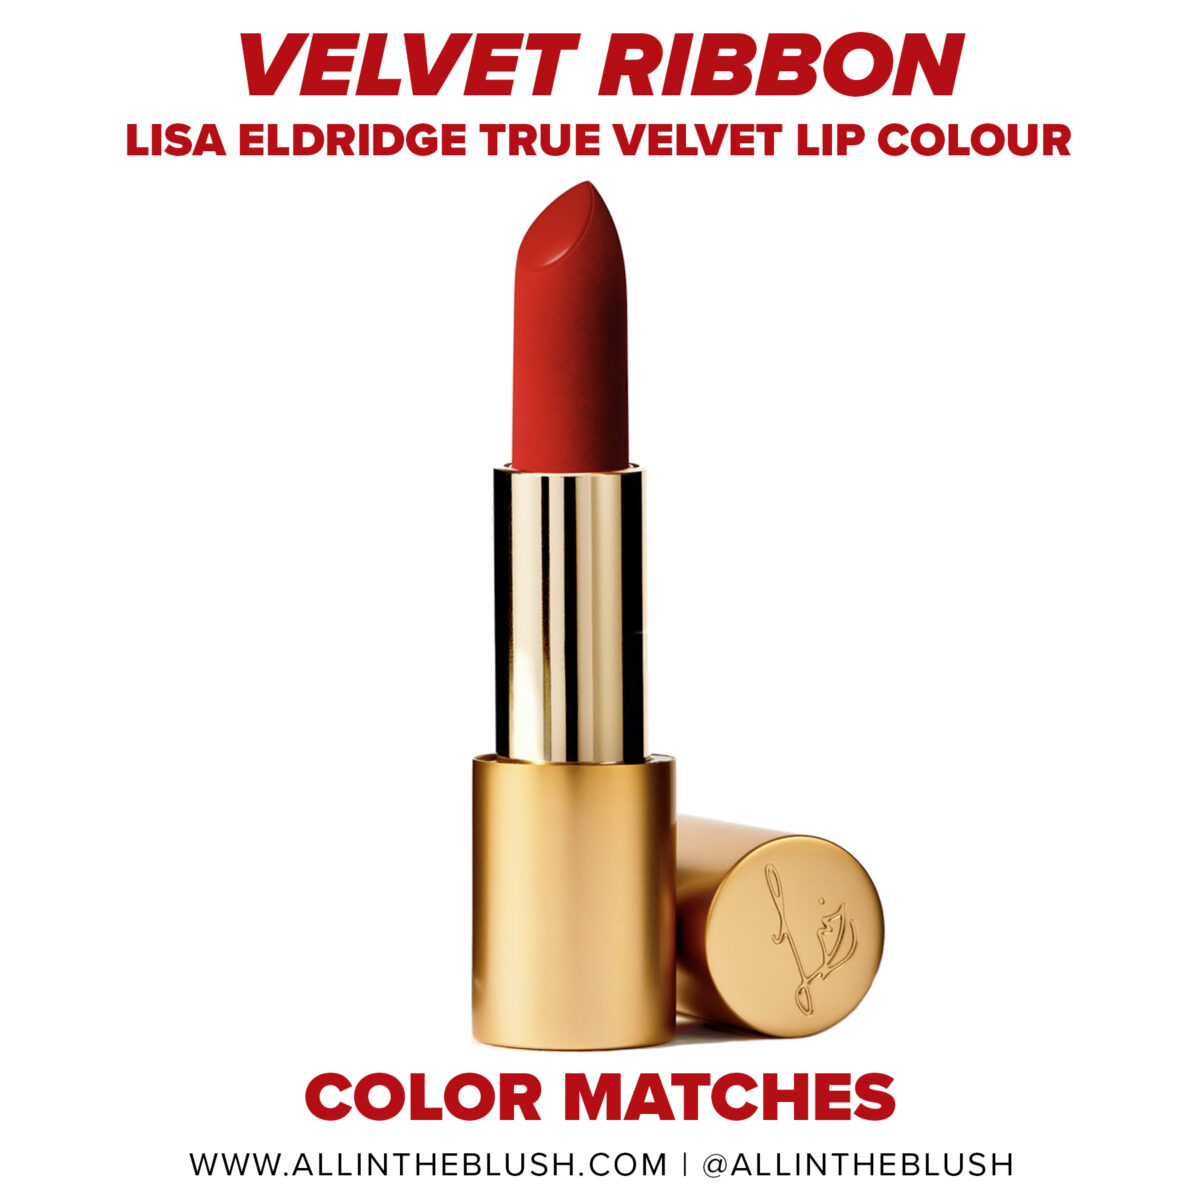 Lisa Eldridge Velvet Ribbon True Velvet Lipstick Dupes